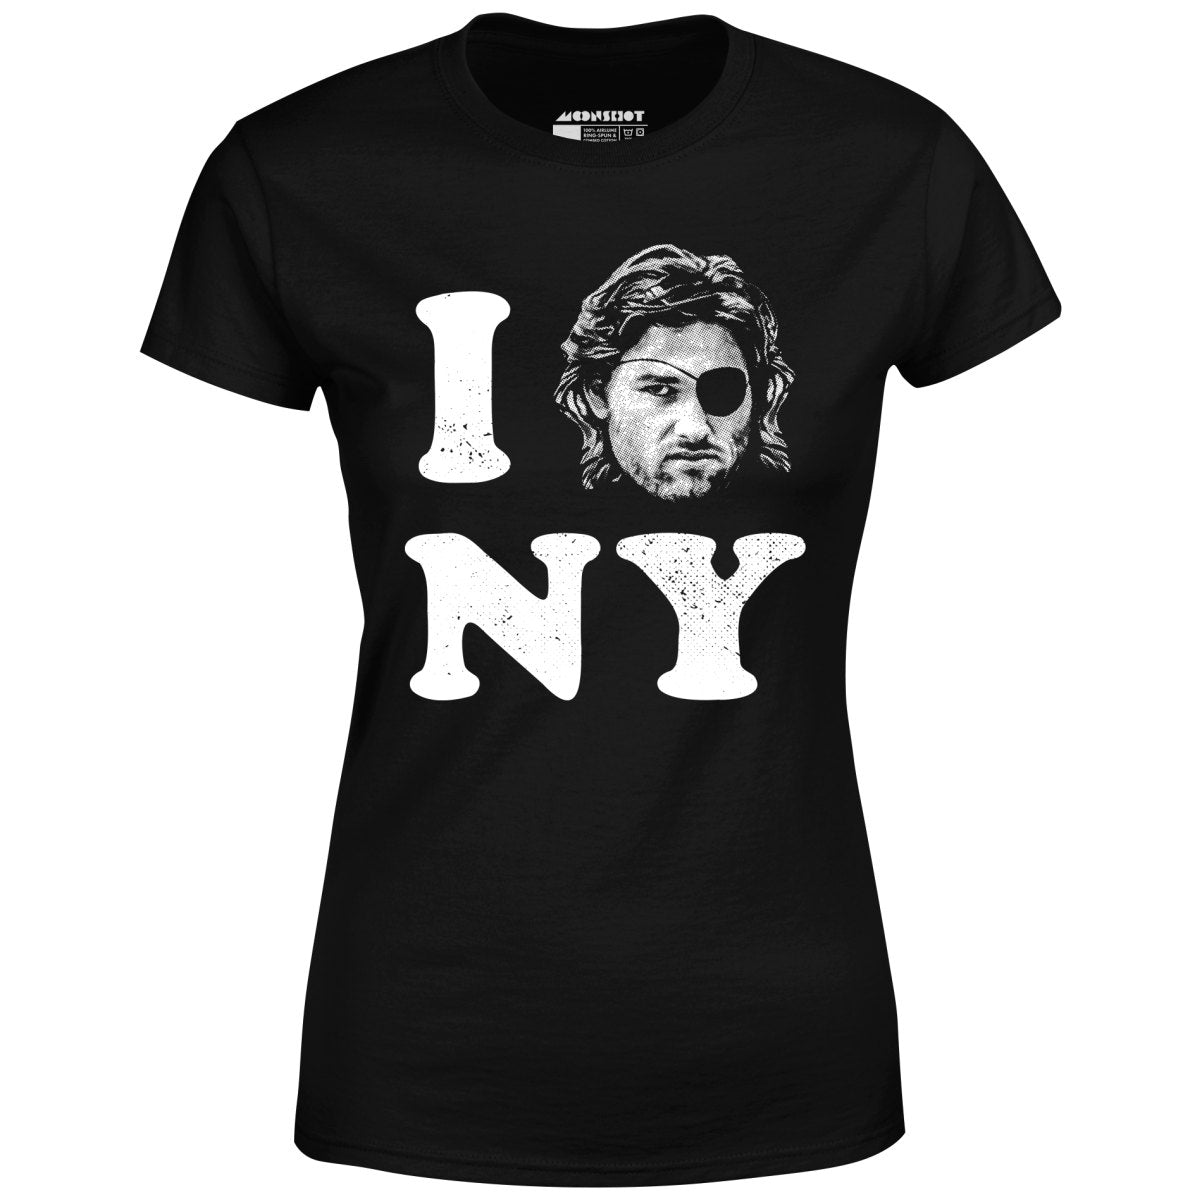 I Love New York - Snake Plissken - Women's T-Shirt